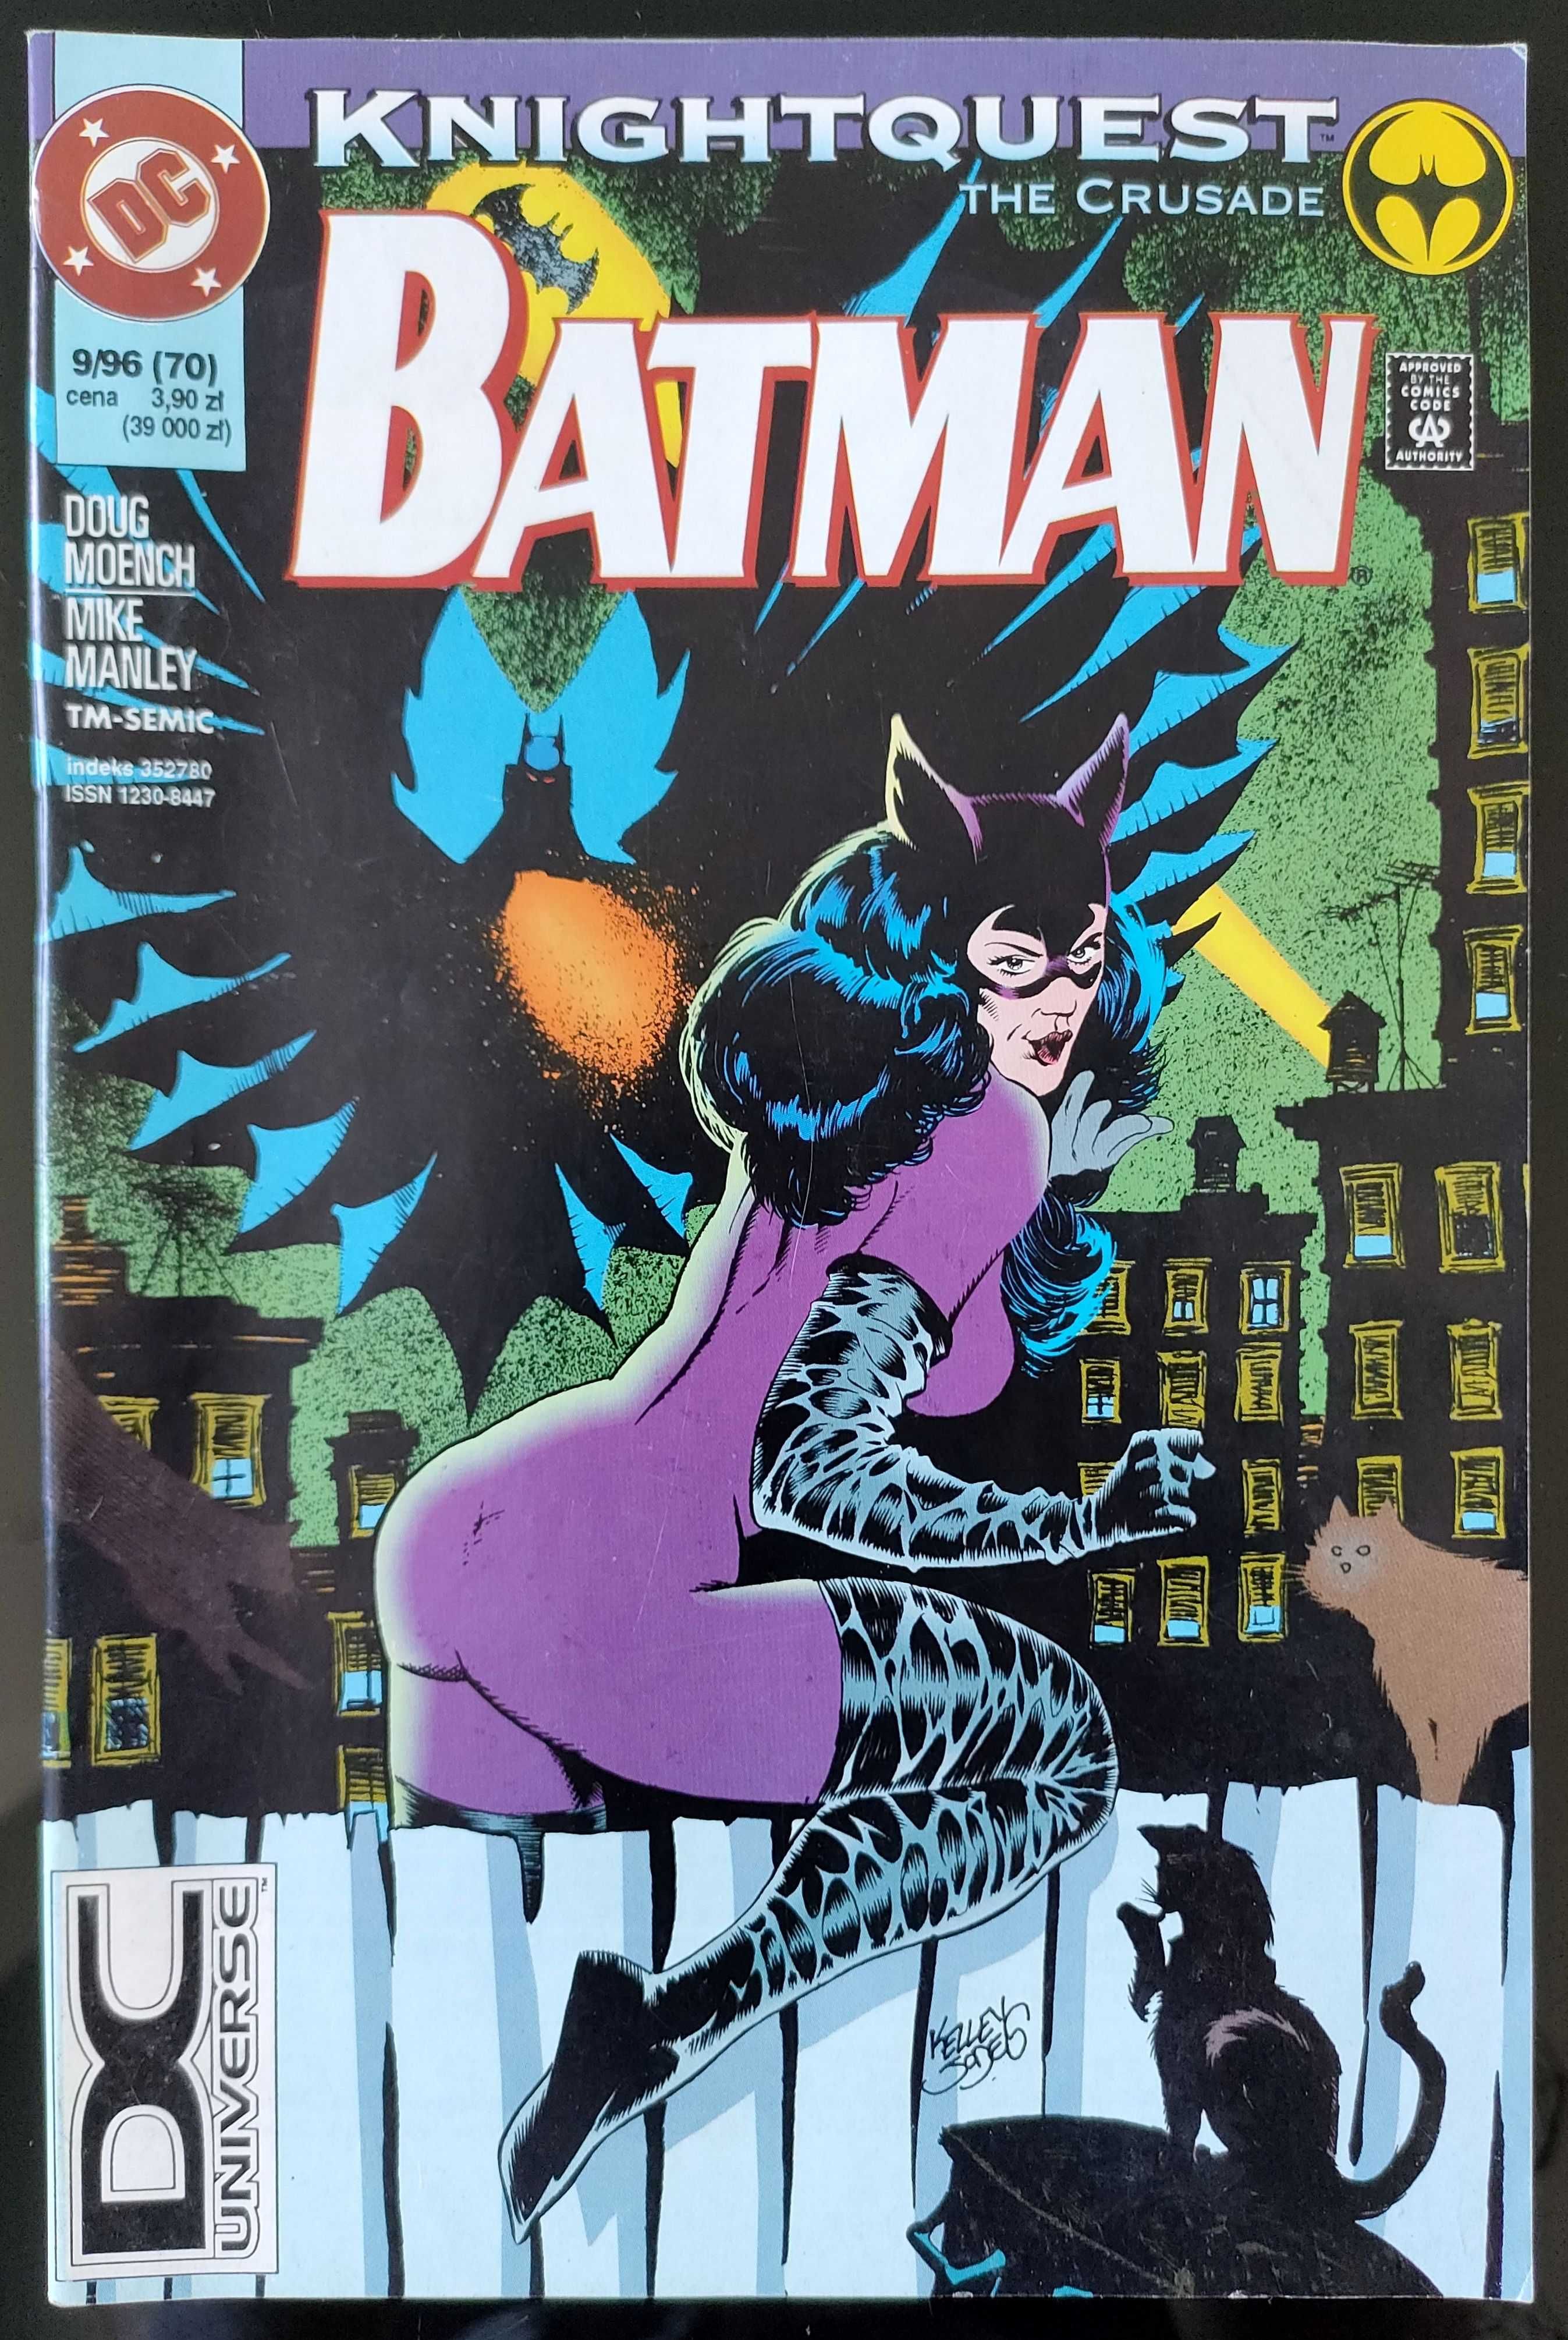 Komiks Batman - 9/96 - TM-Semic